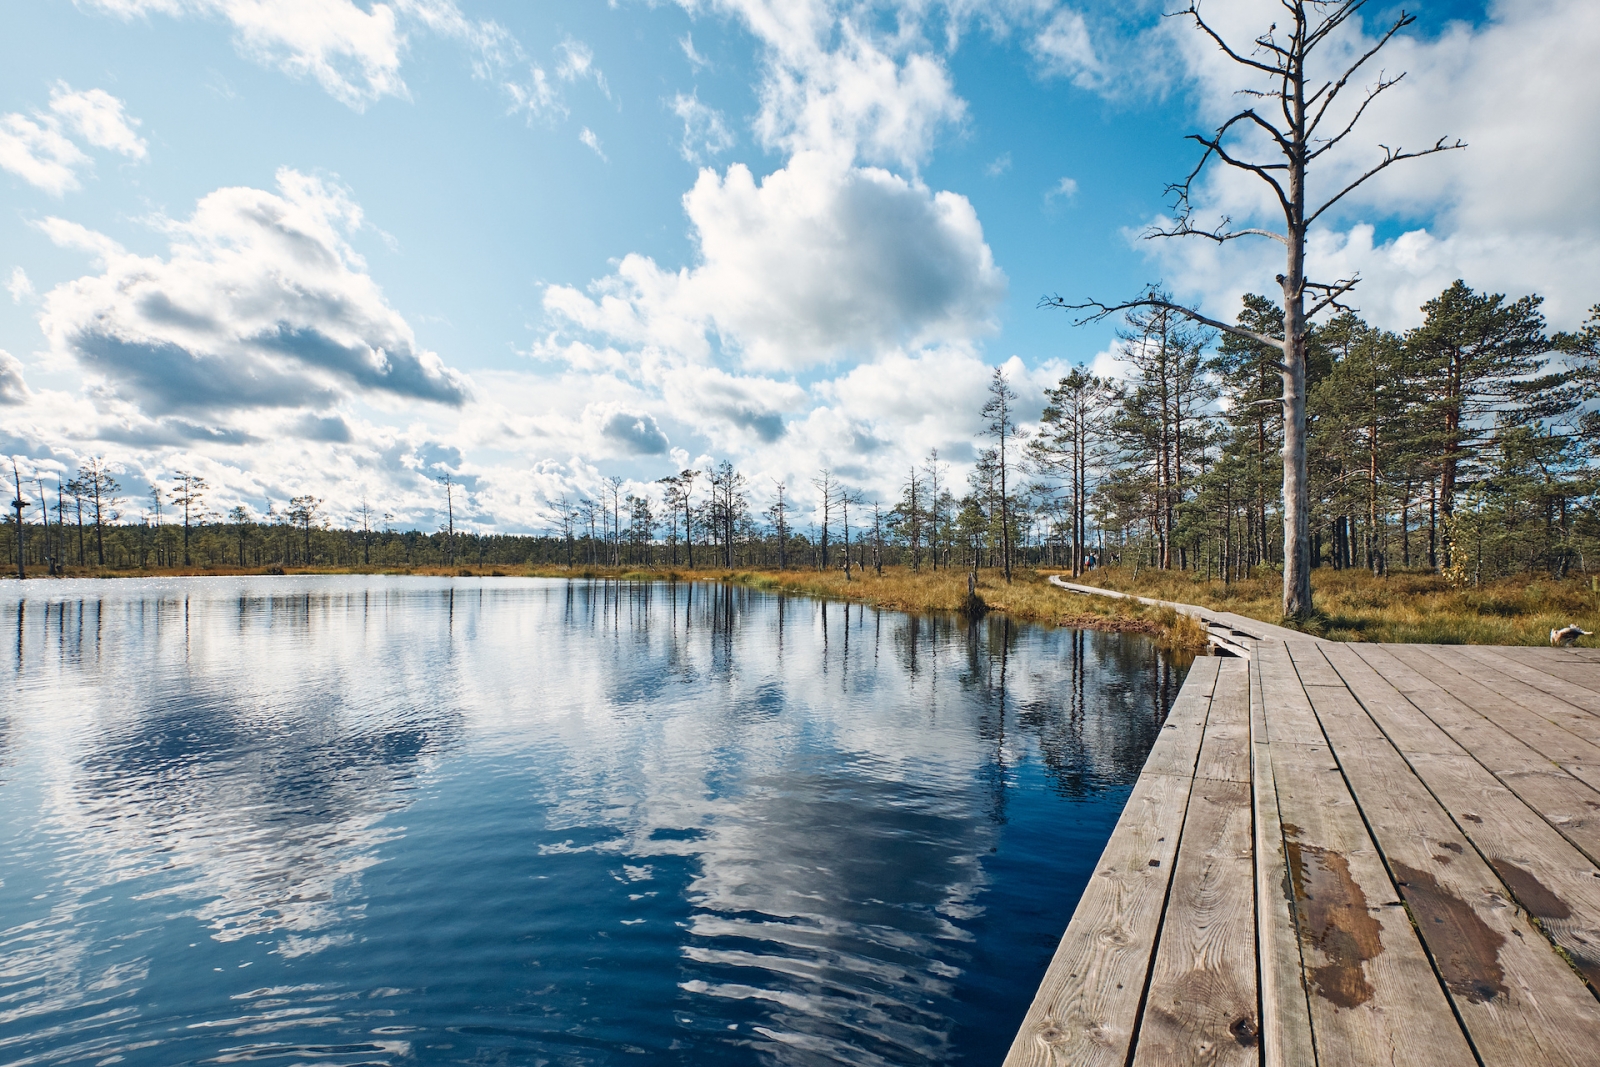 El paisaje alrededor del pantano de Viru, Parque Nacional Lahemaa, Estonia